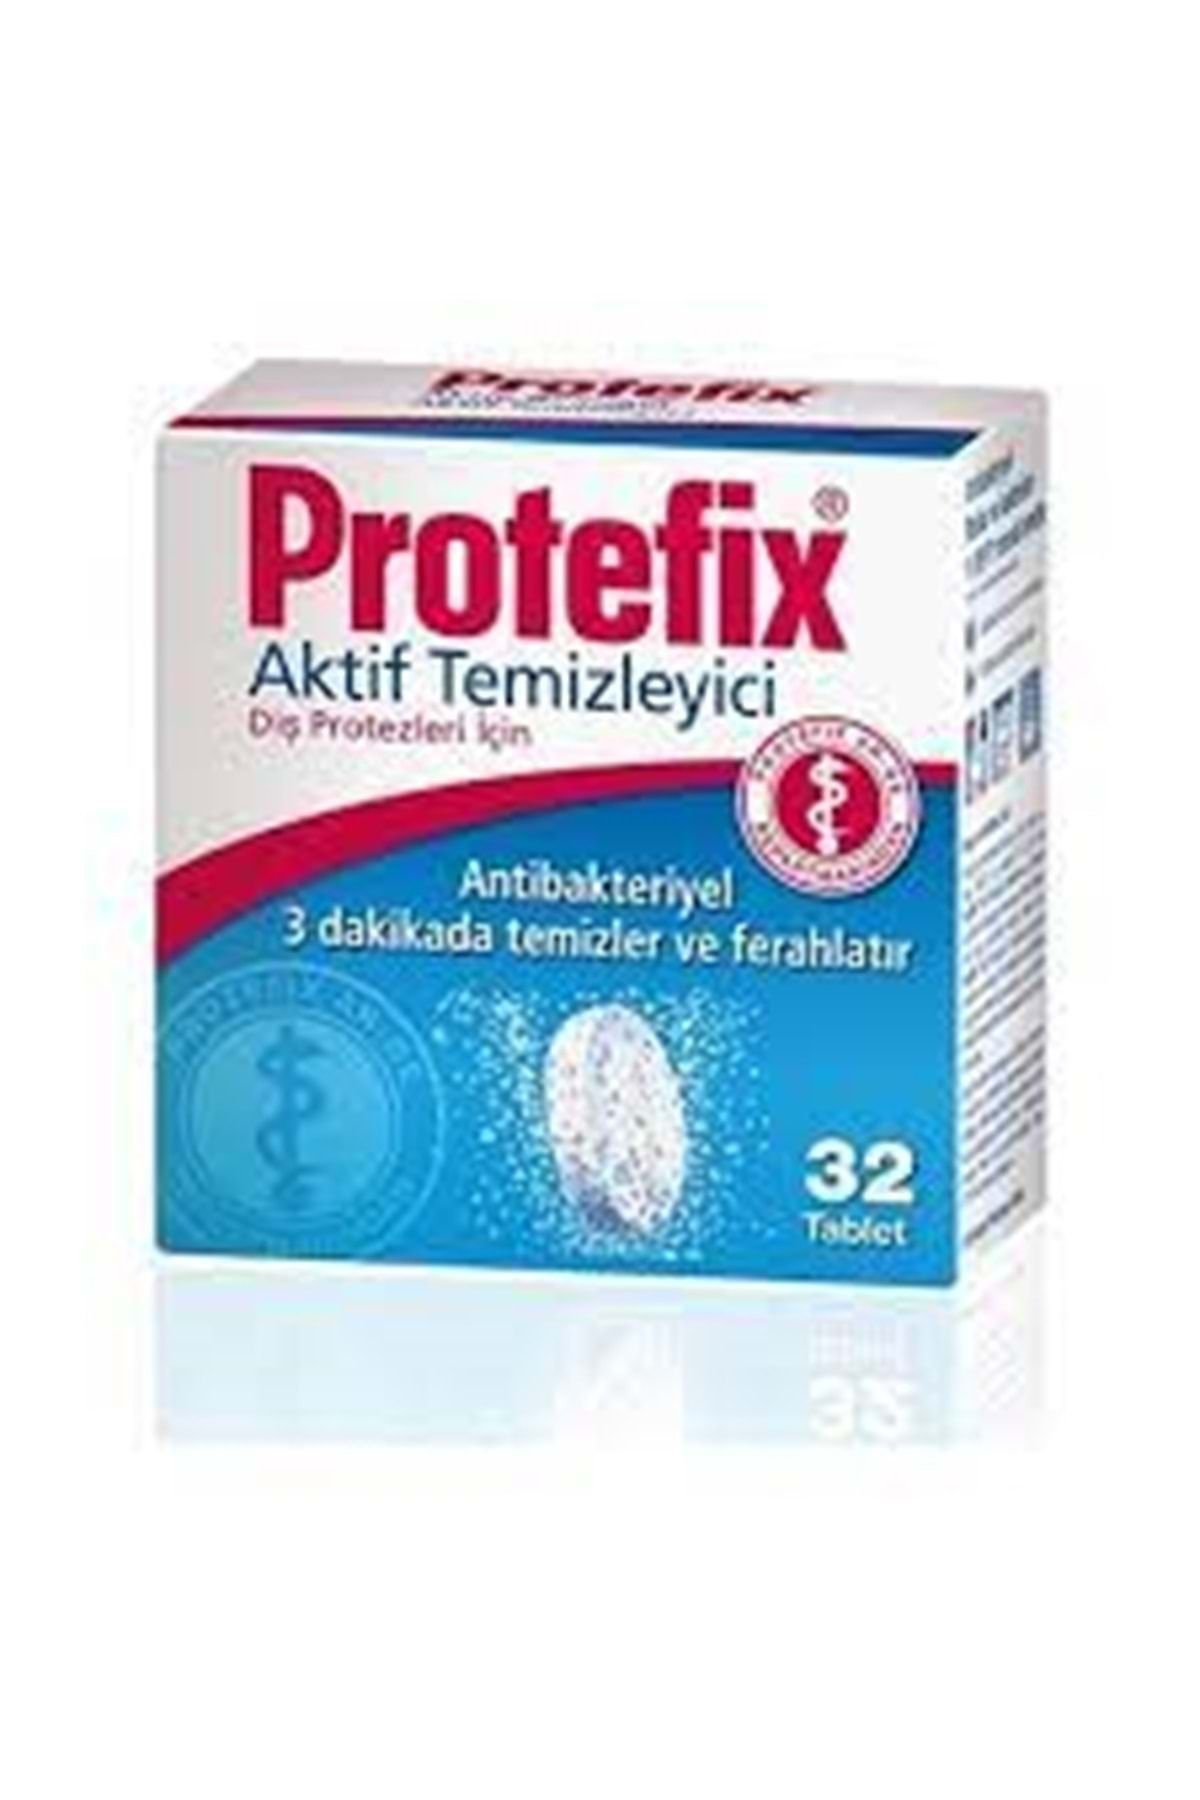 Protefix Diş Protezleri Temizleyici 32 Tablet